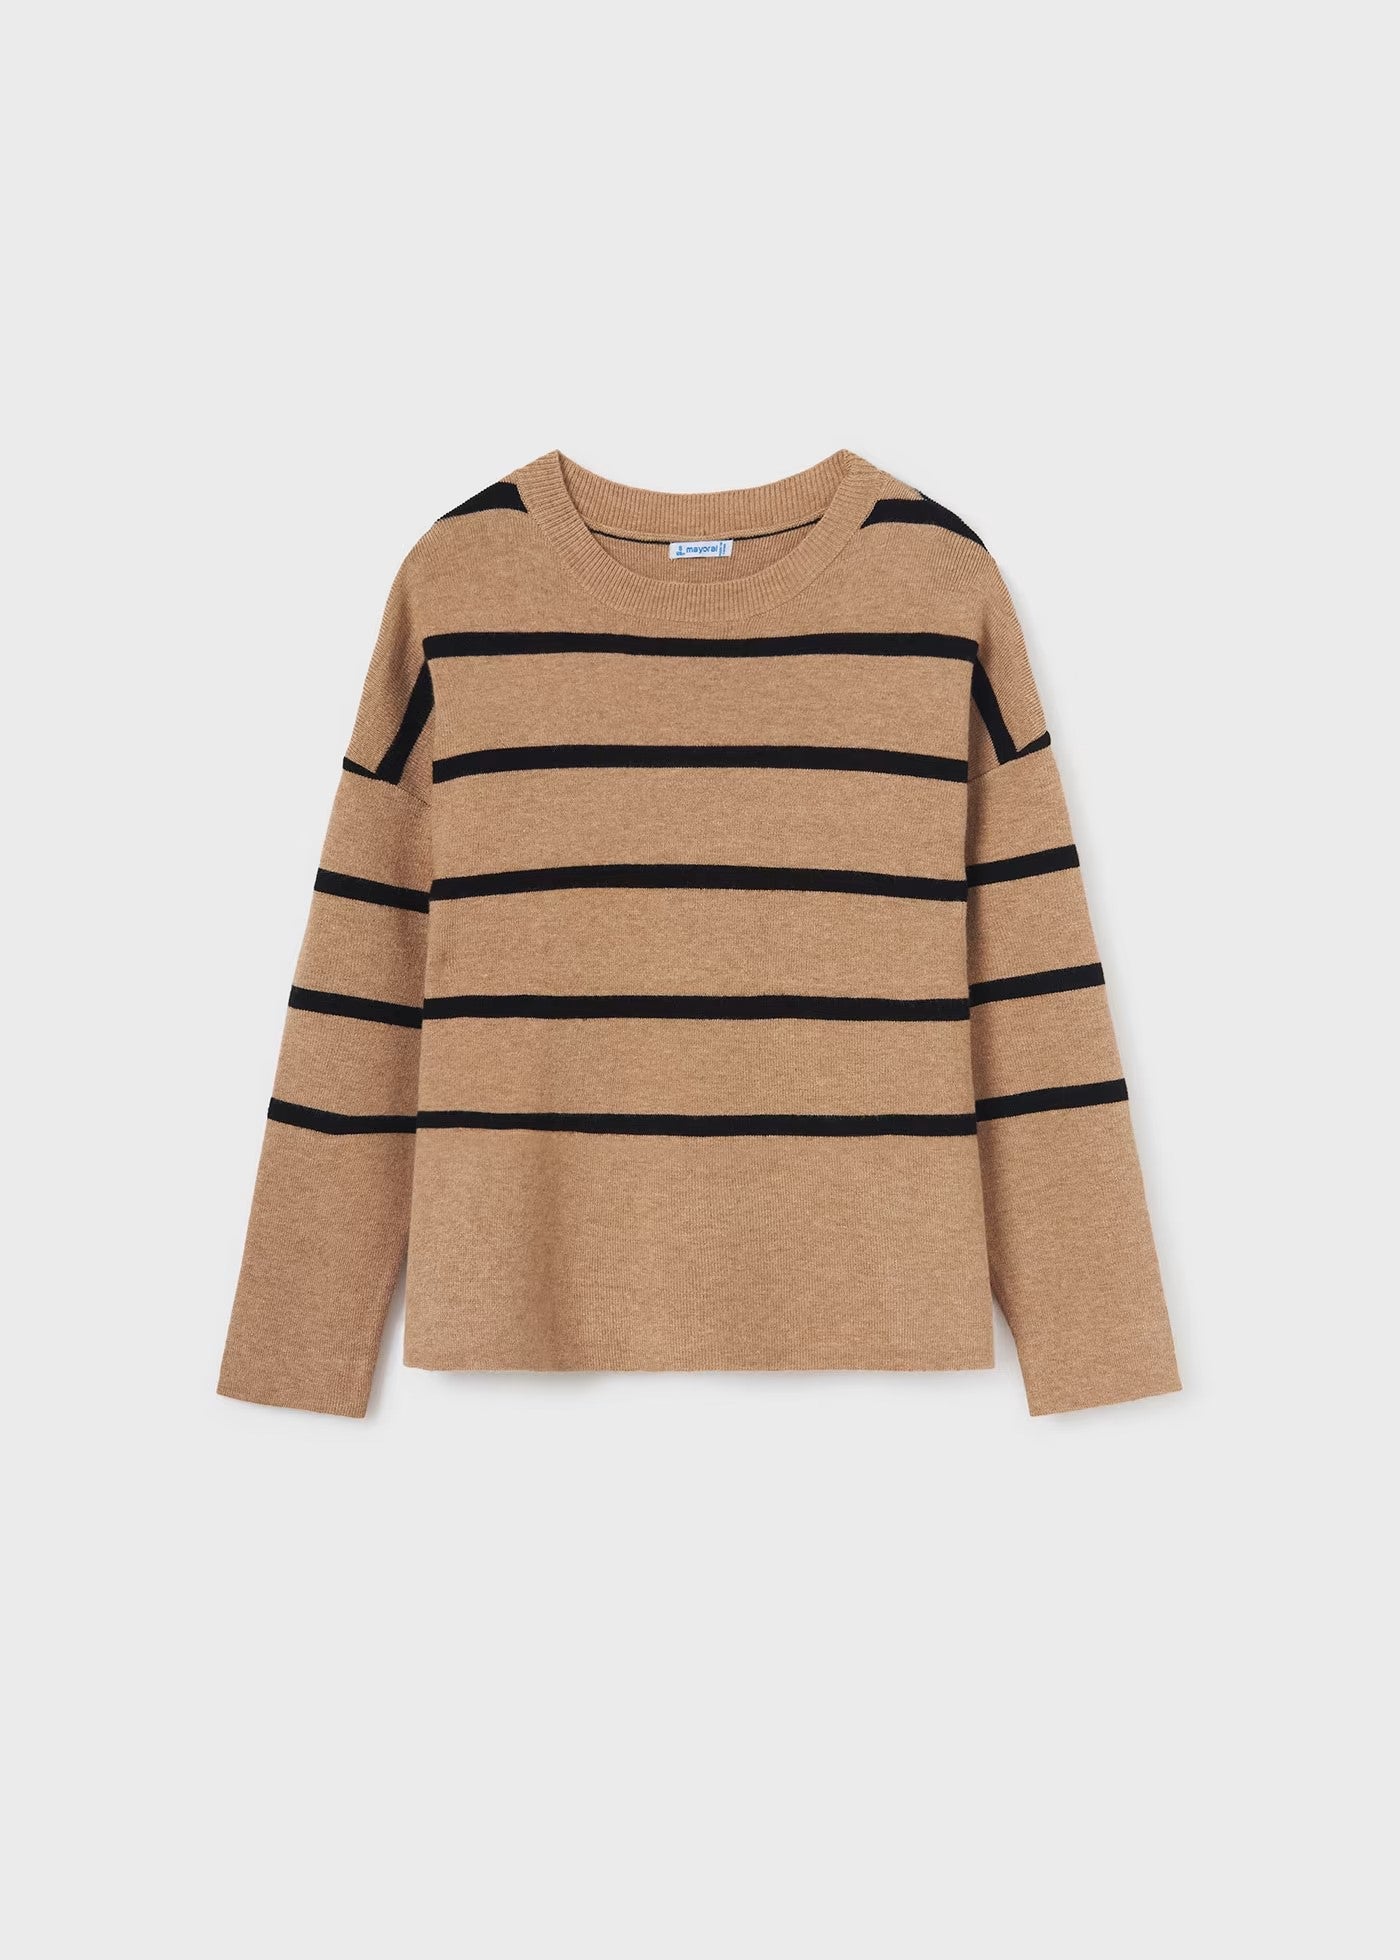 7305 - Tween Stripe Sweater - Tan